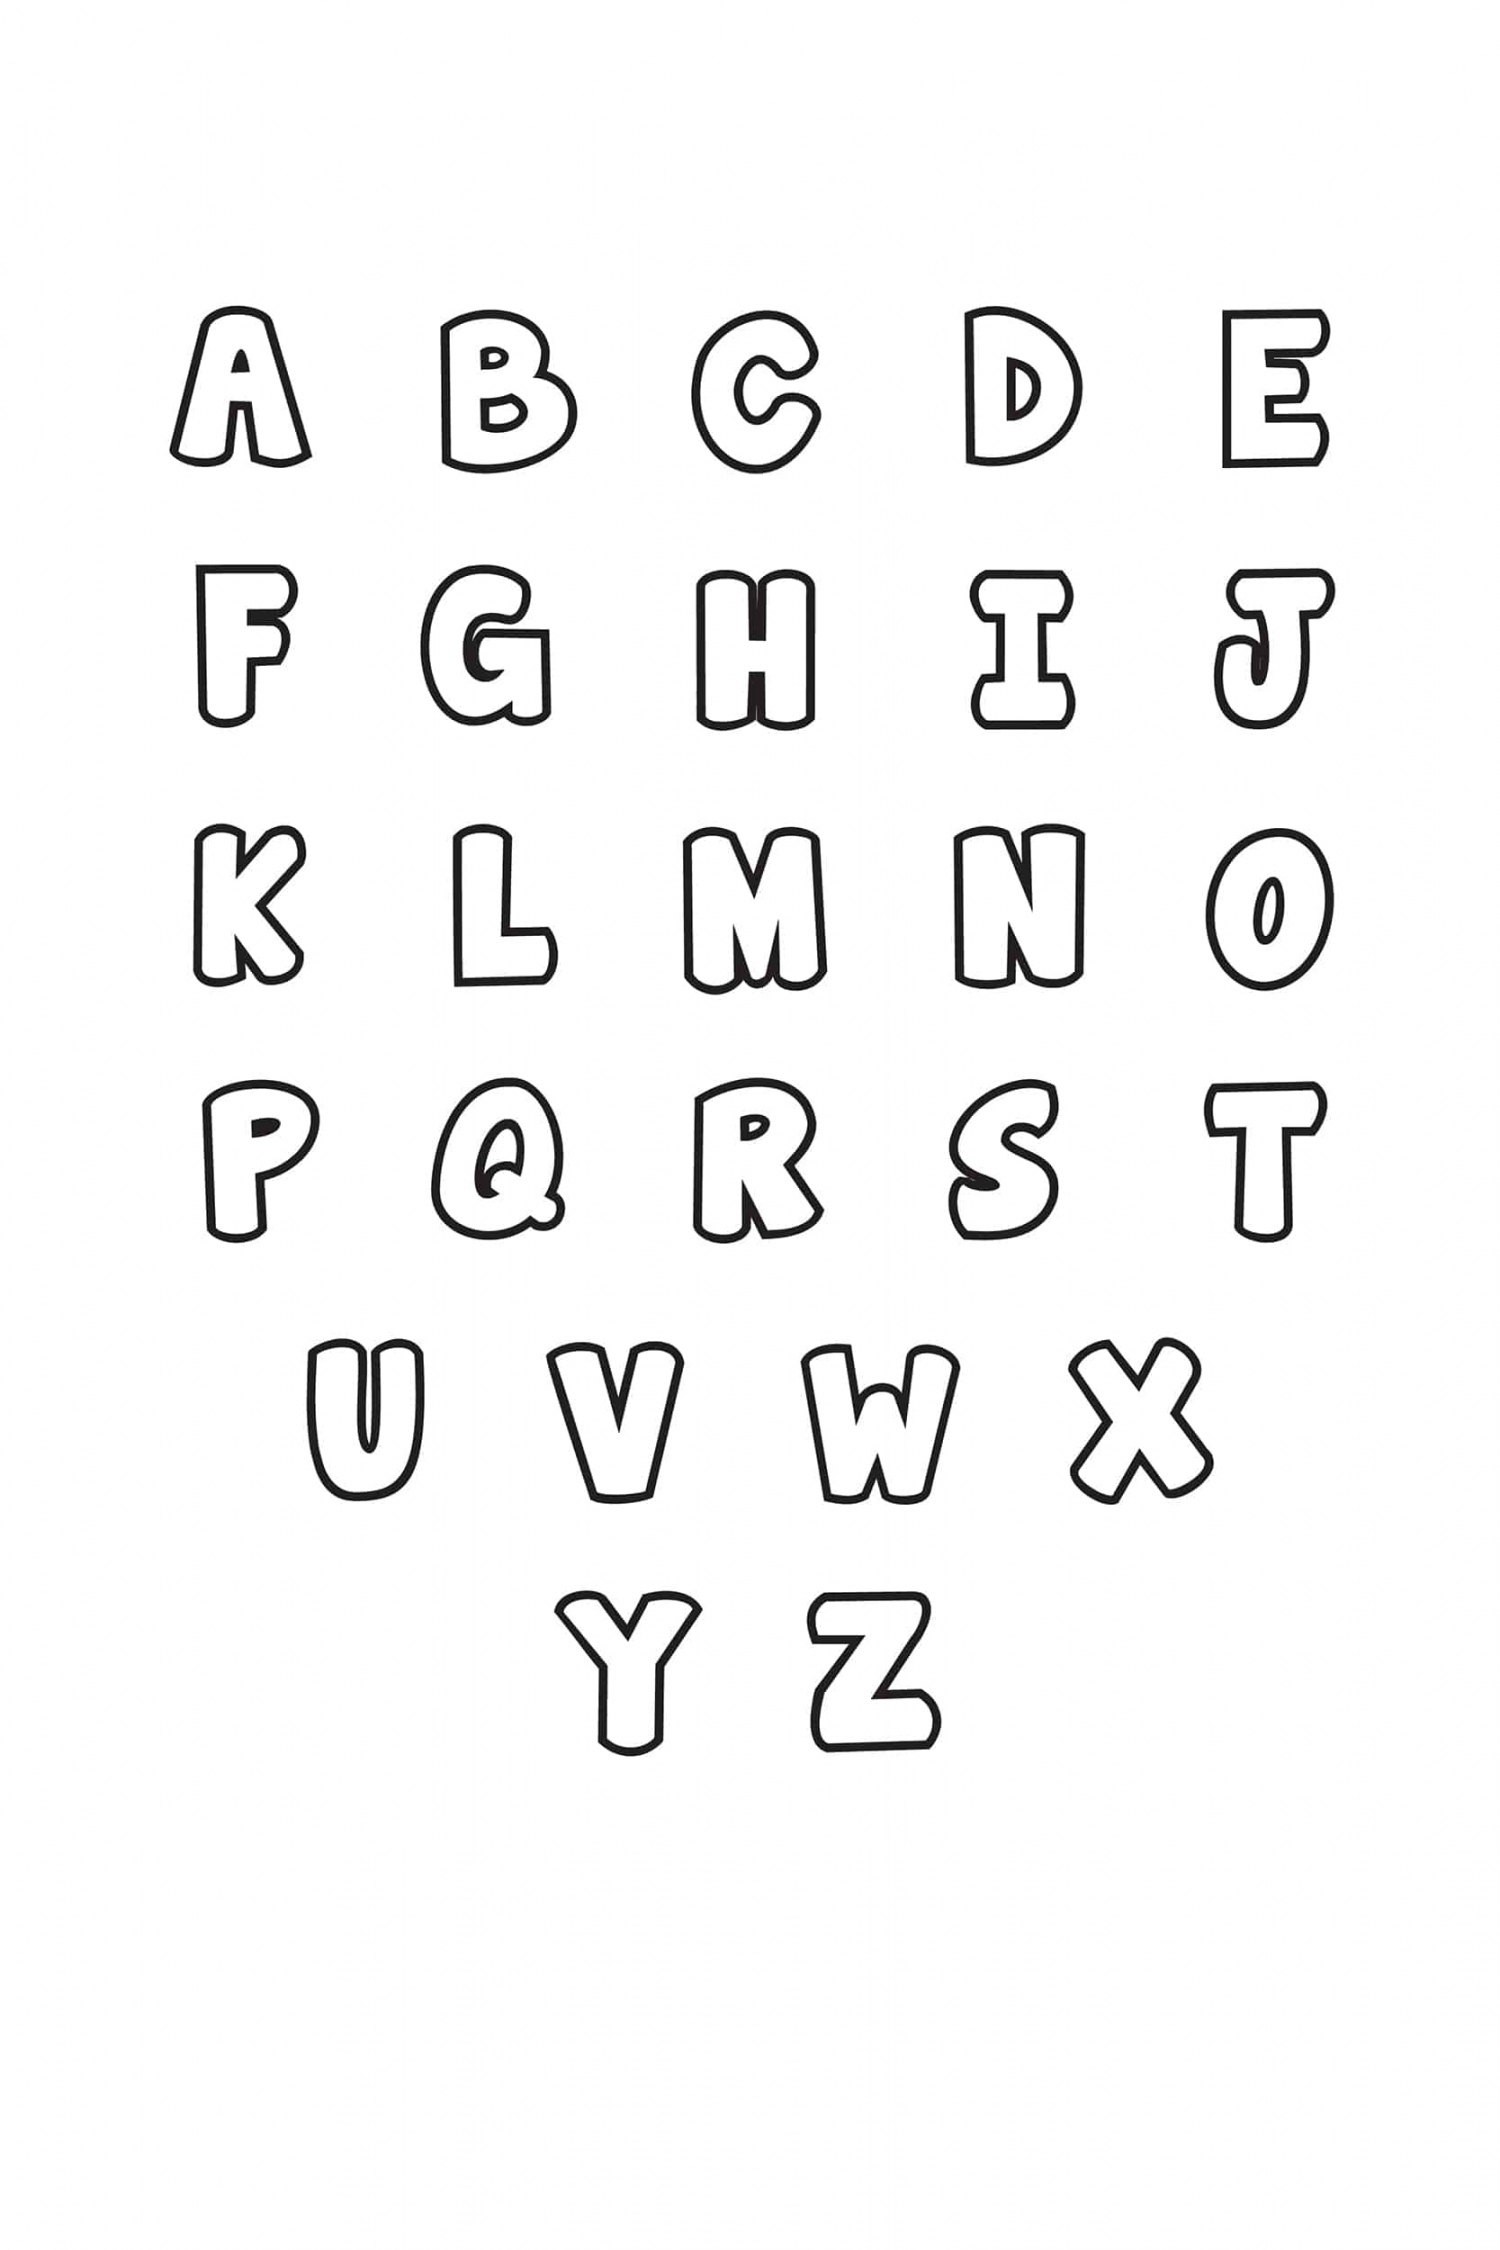 Free Printable Bubble Letter Alphabet Stencils - Freebie Finding Mom - FREE Printables - Free Printable Stencils Letters